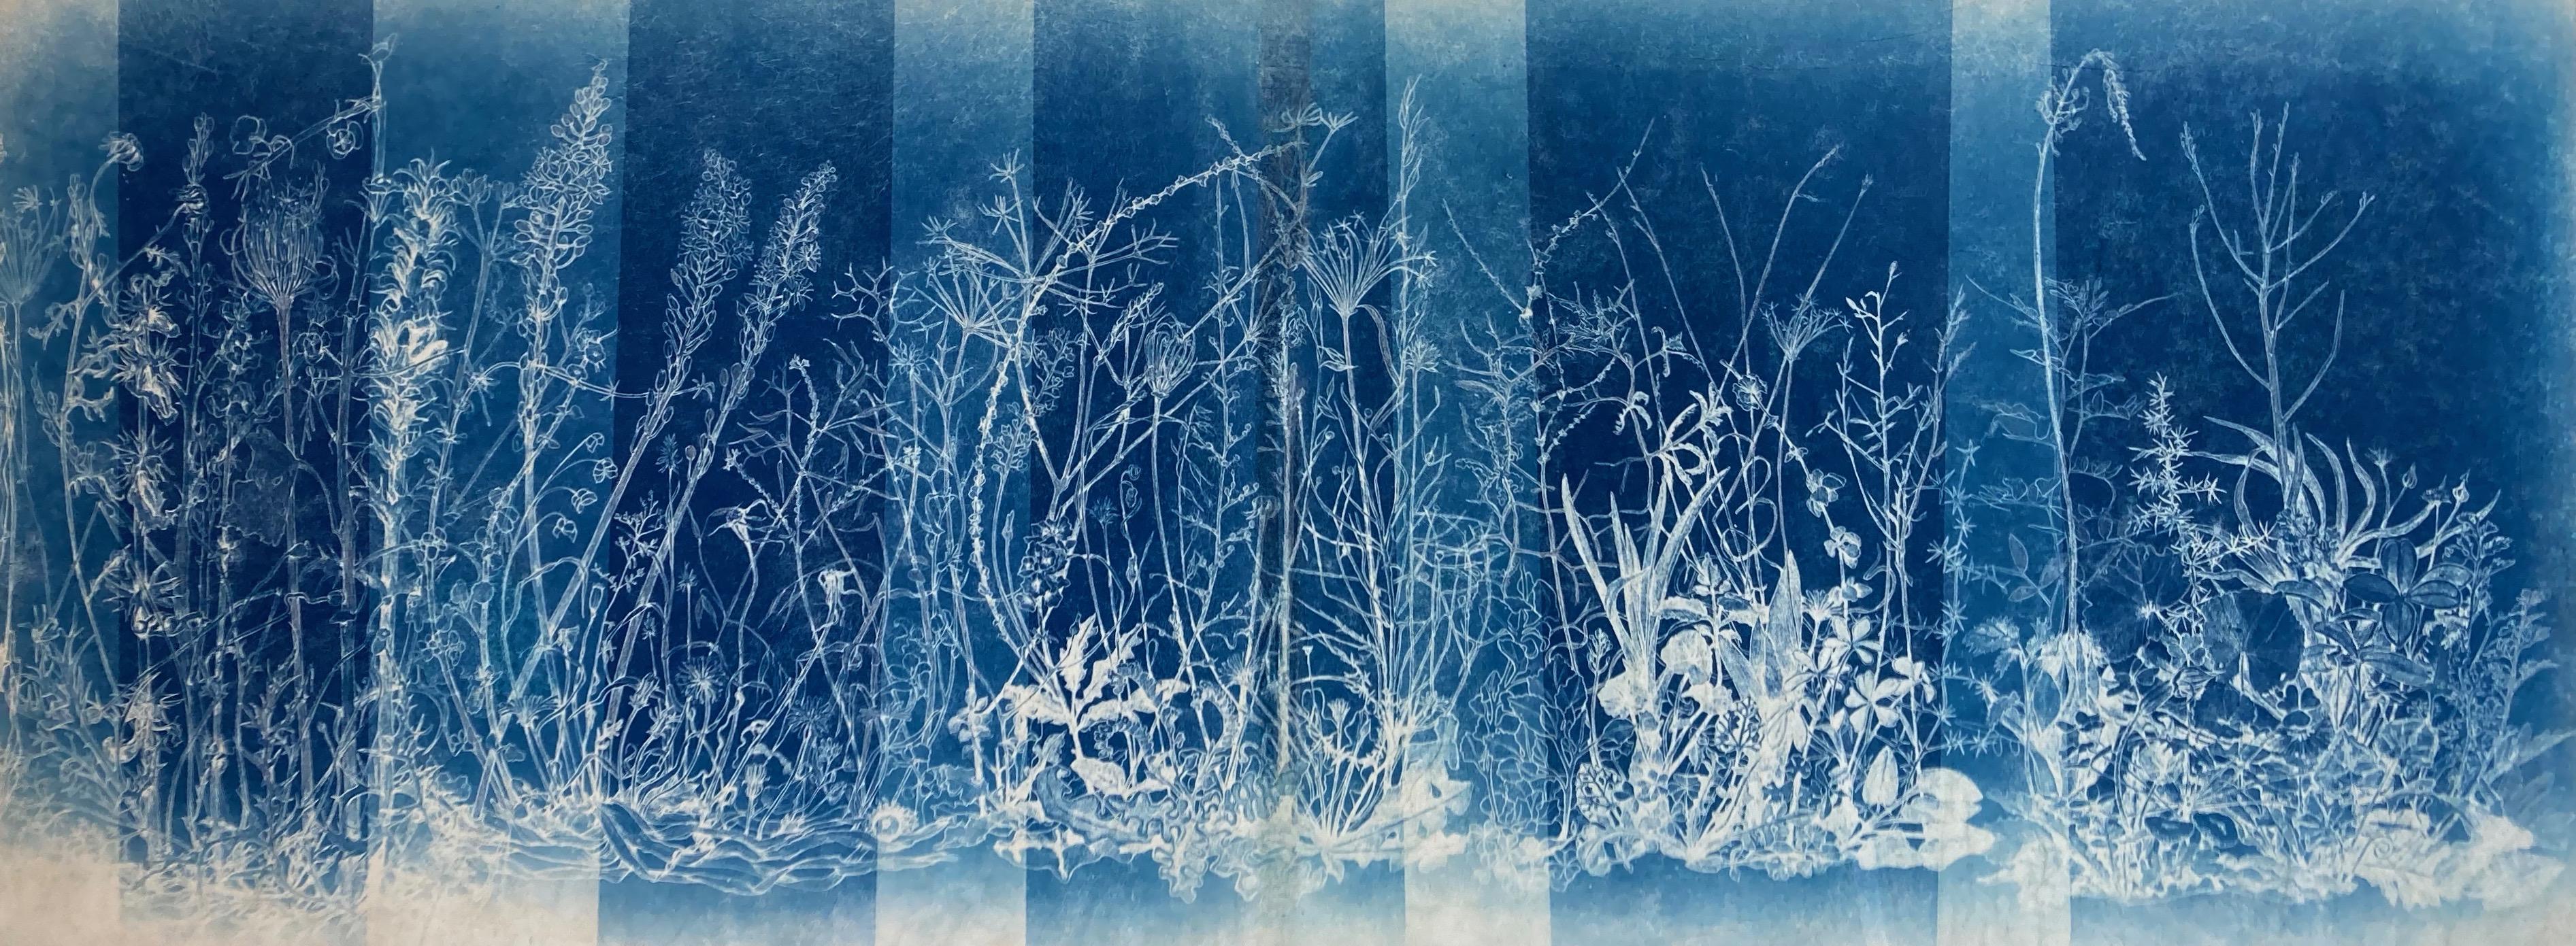 ""Mapping the Walk"" Realistische/abstrakte fotografische Blumenstudie in Blau / Weiß